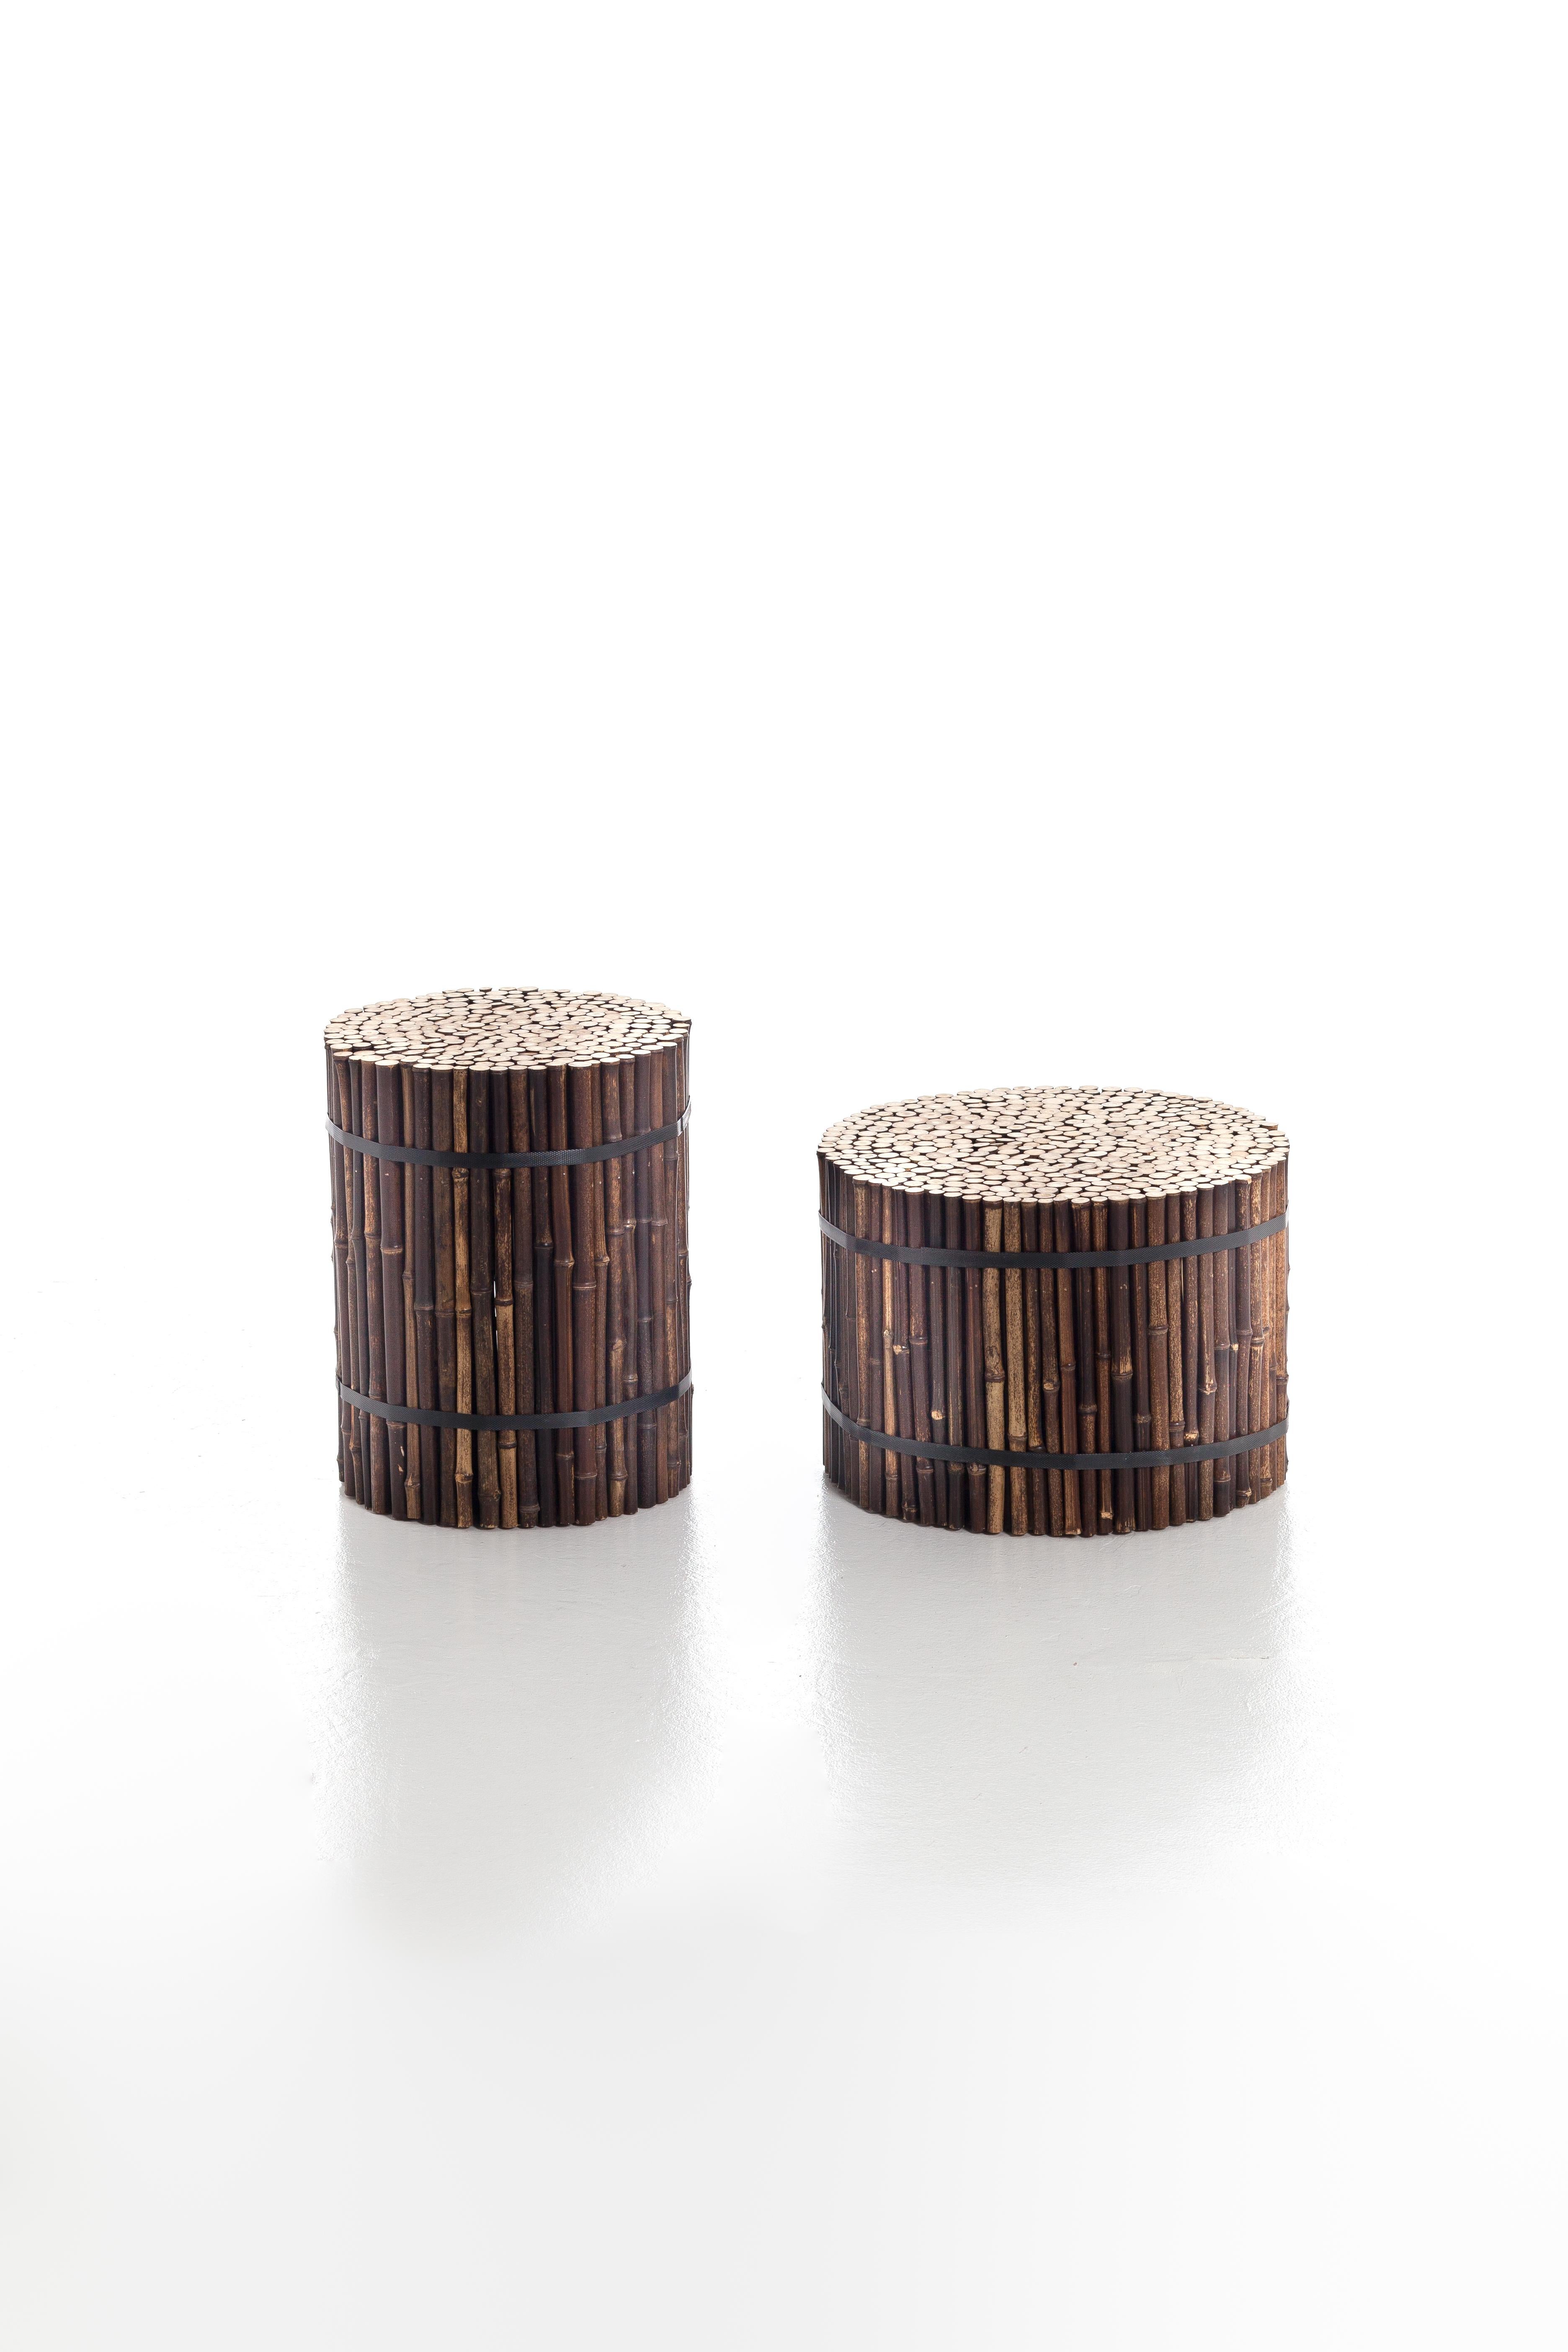 Exotik und minimaler Charme vereinen sich in der Familie der zylindrischen Black 19/21 Poufs aus schwarzem Bambus. Sie sind in zwei Größen erhältlich und erinnern an die Idee eines Bündels von Bambusrohren. Ottomane aus schwarzem